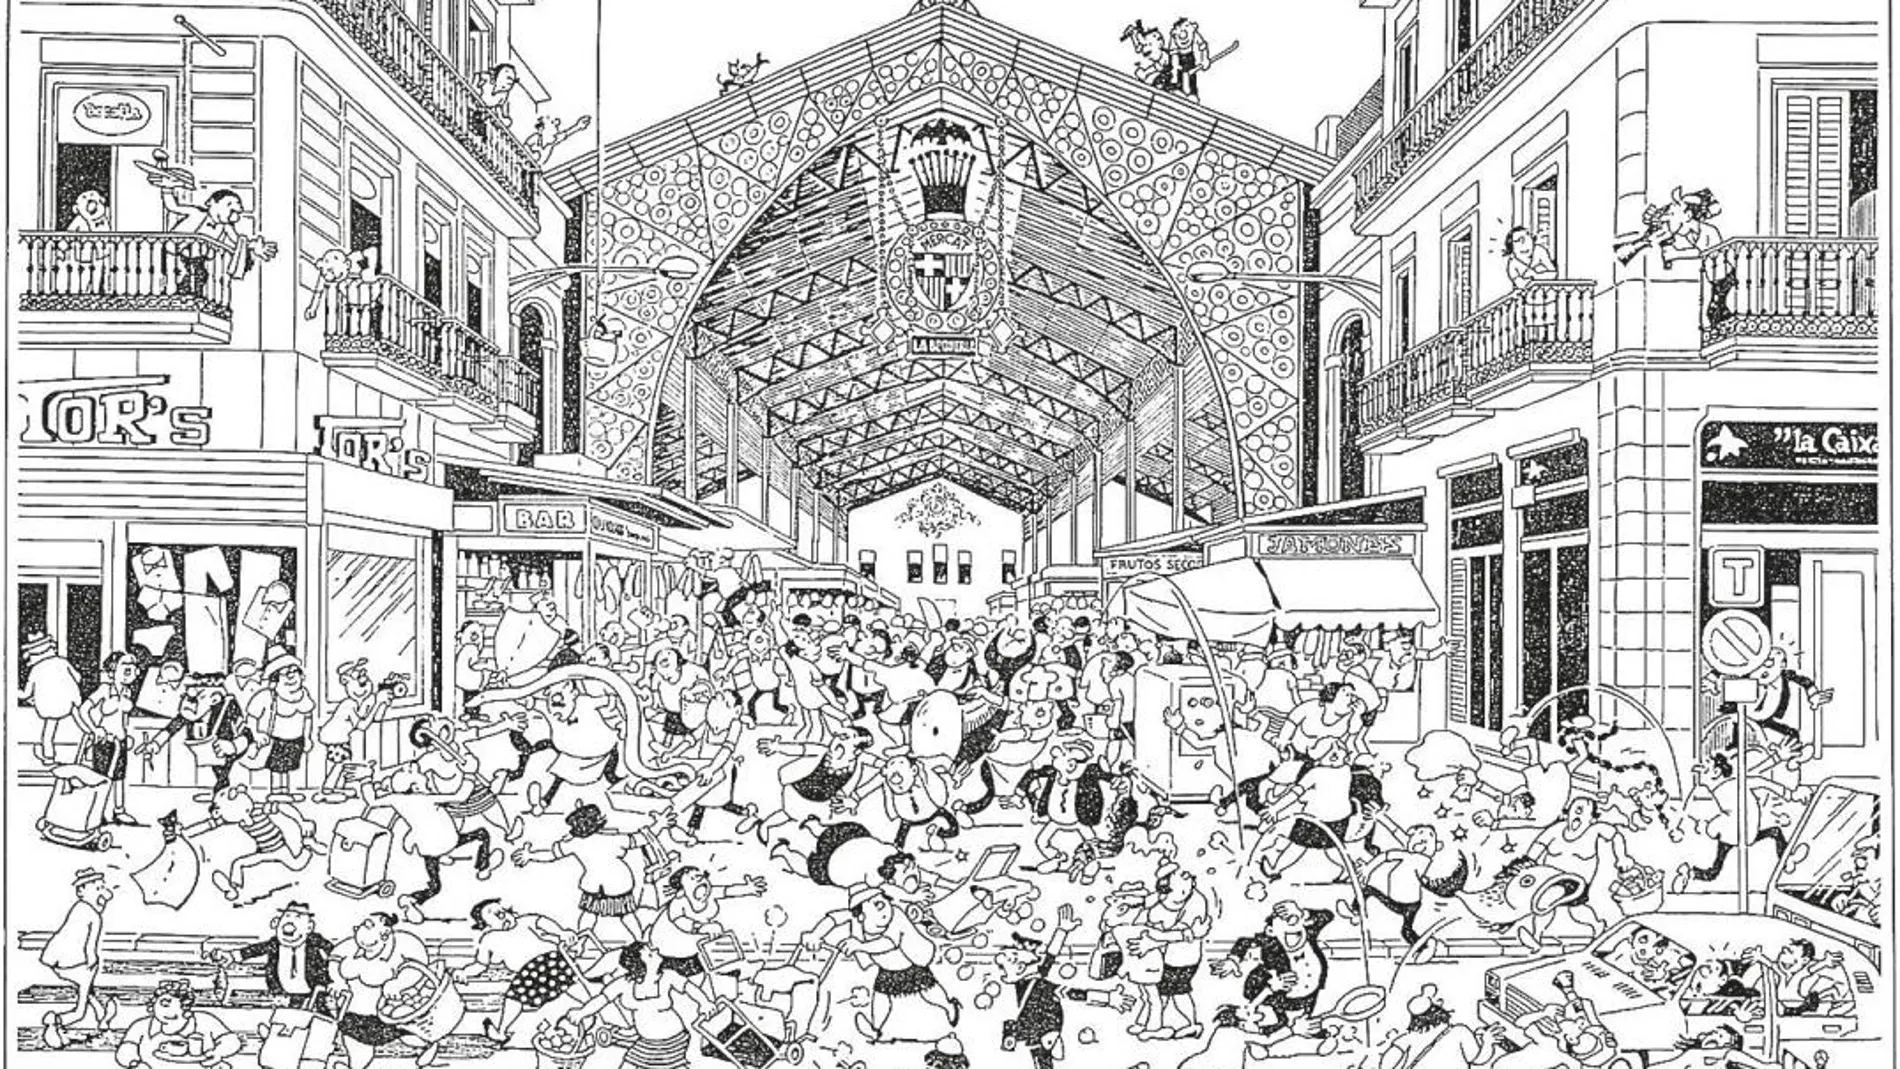 El mercado de la Boqueria visto por Josep Maria Blanco para su libro homenaje a Barcelona.